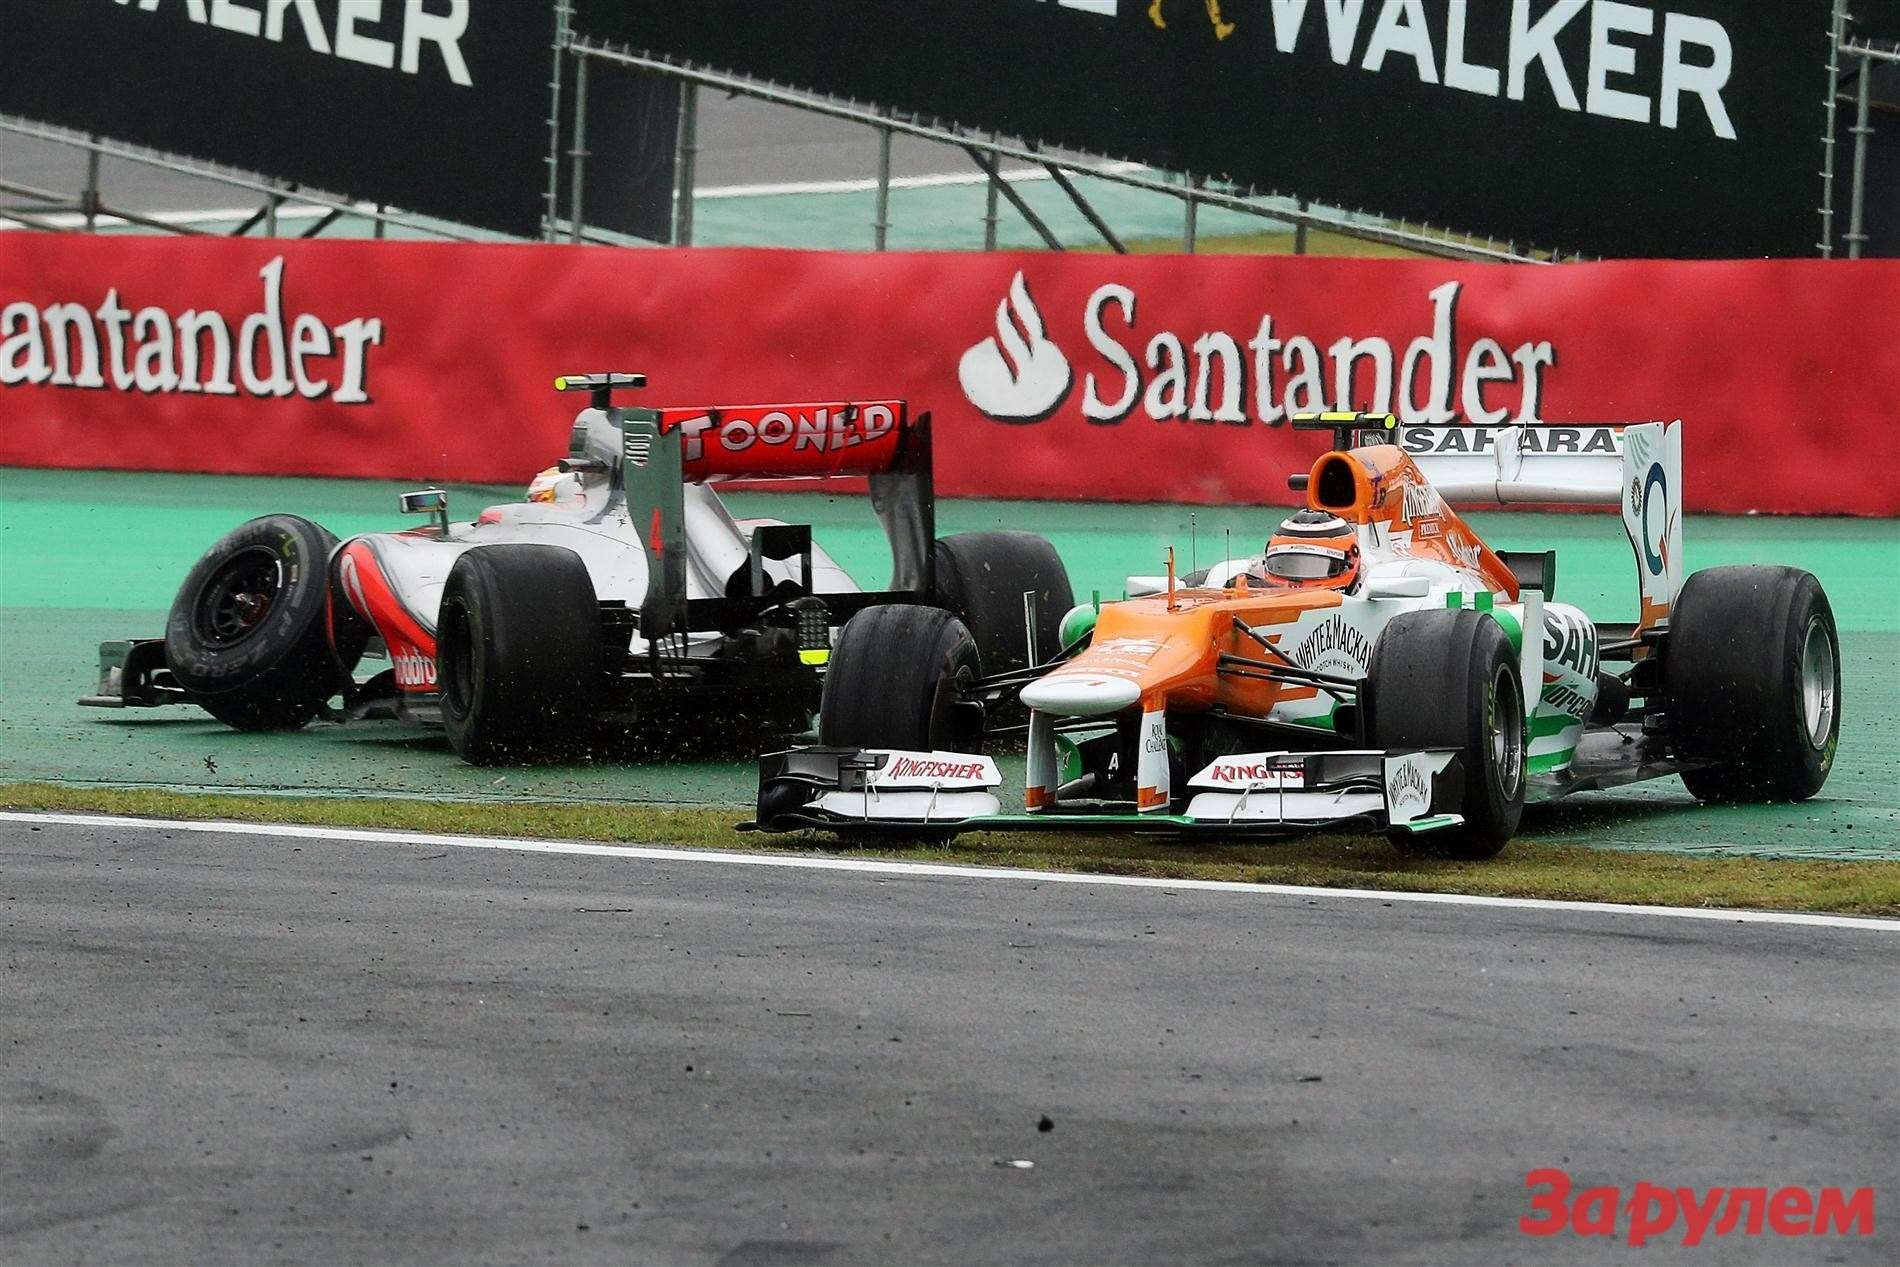 Последняя гонка за McLaren закончилась для Льюиса Хэмилтона безрезультатно - Нико Хюлькенберг выбил англичанина с трассы.